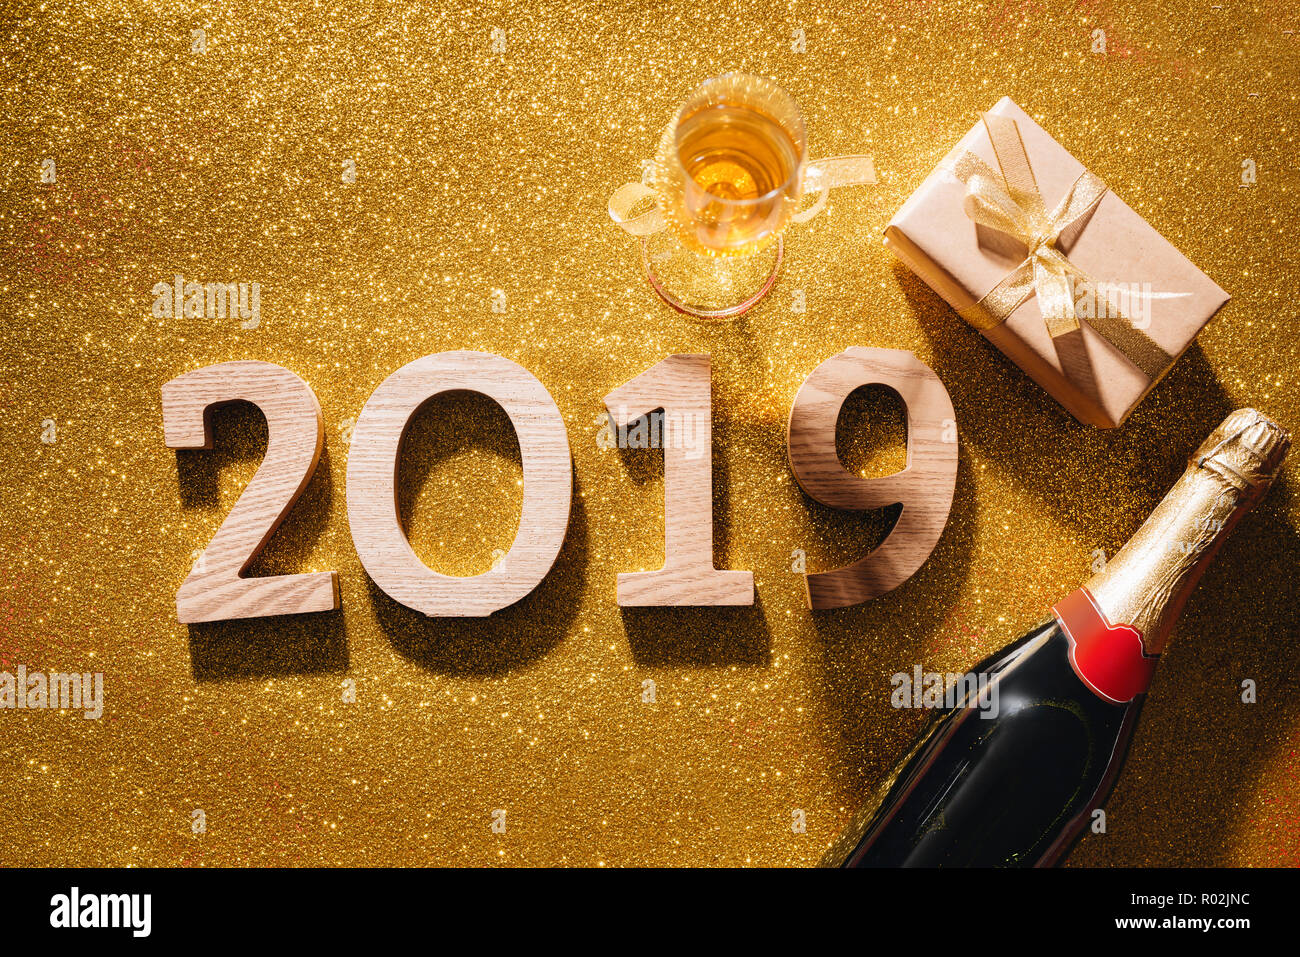 Bonne année 2019 les numéros de modèle. le bloc-notes et d'espace libre pour le texte. Décorations de Noël, des jouets de Noël, étoiles d'or, cadeaux. Banque D'Images